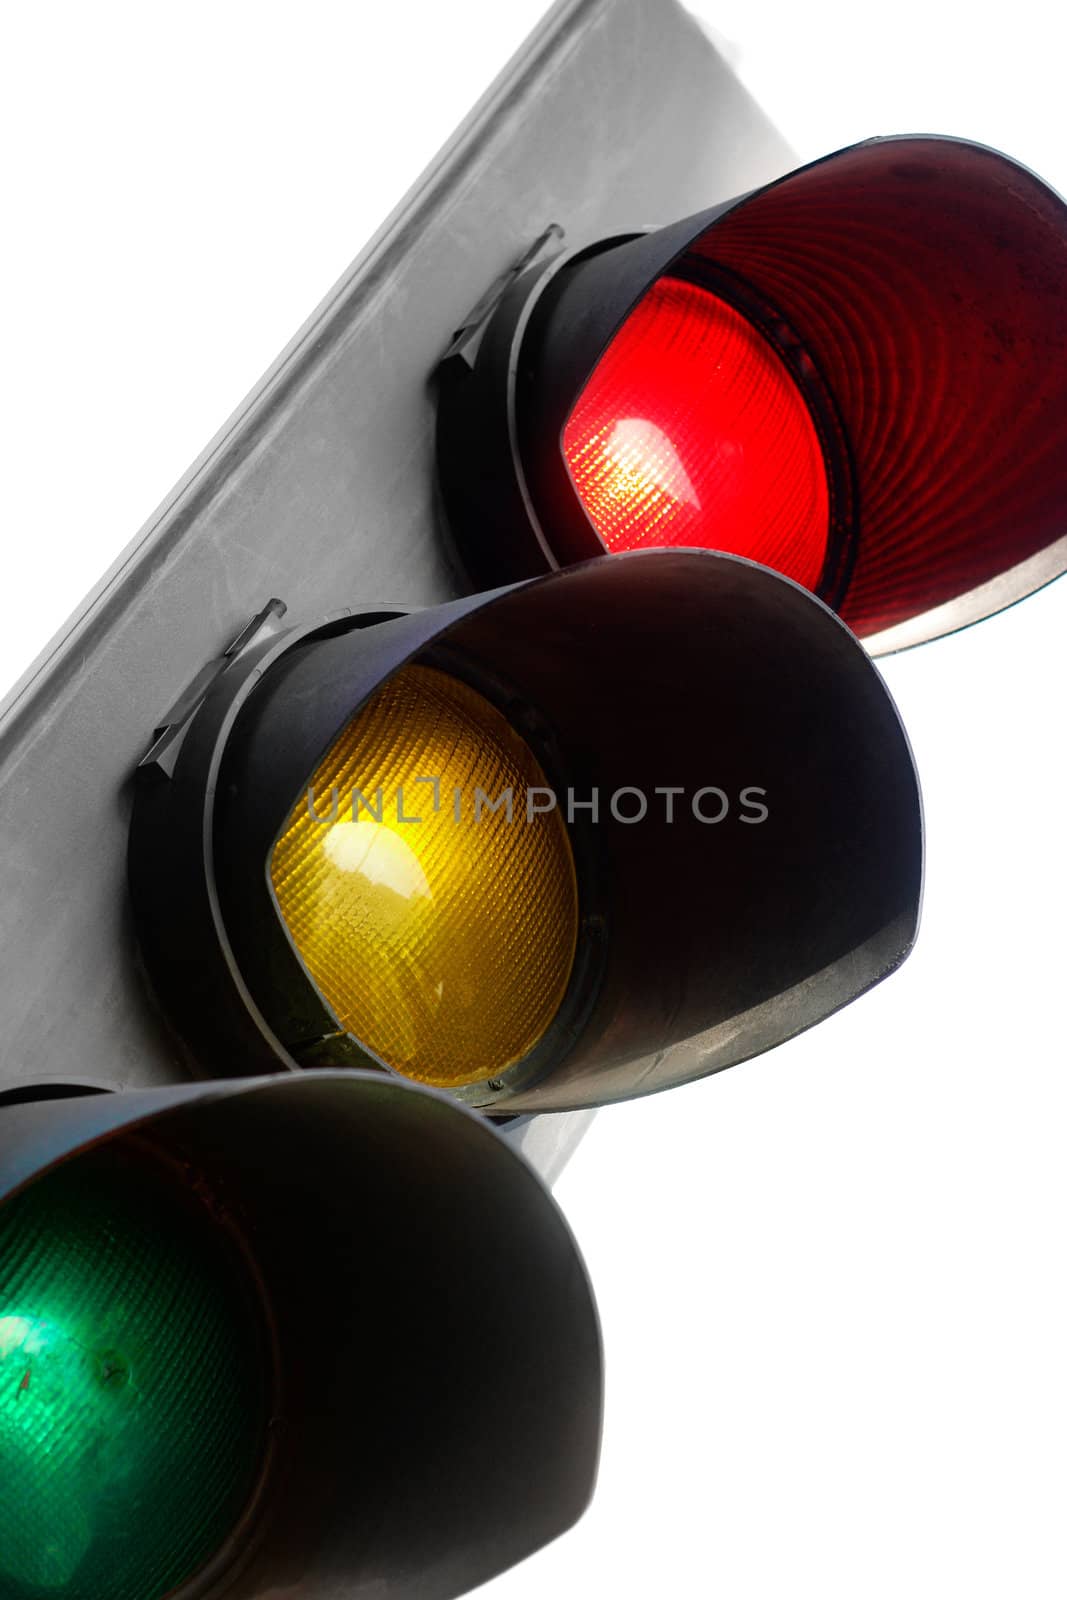 Traffic light by leeser